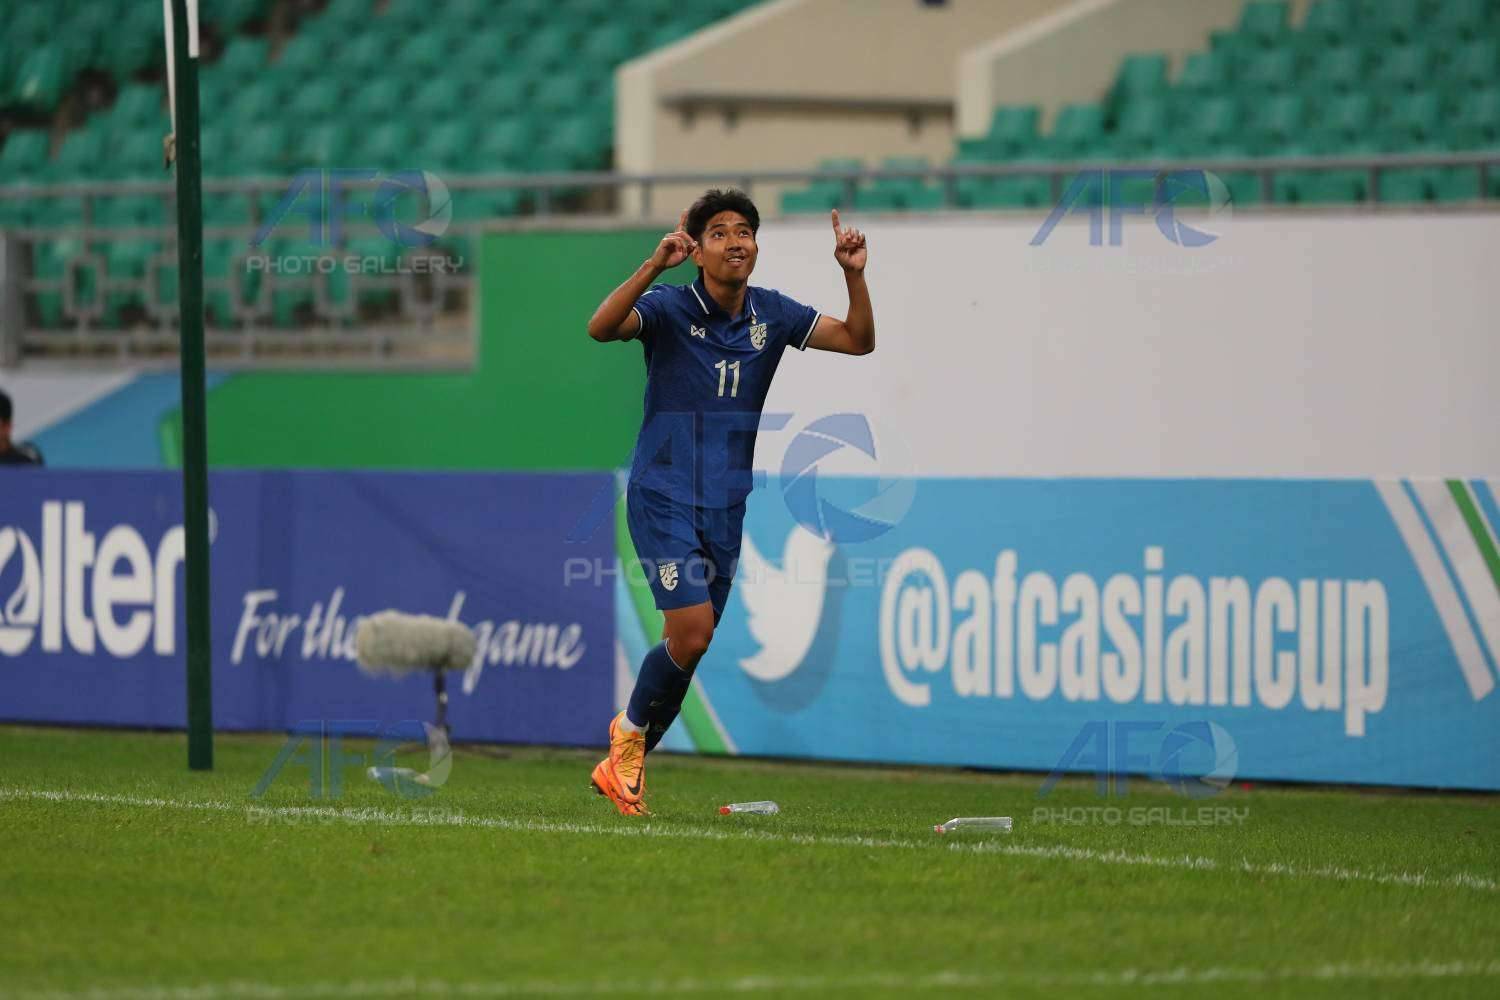 TRỰC TIẾP U23 Malaysia 0-3 U23 Thái Lan: Malaysia vỡ trận, liên tục nhận bàn thua - Ảnh 1.